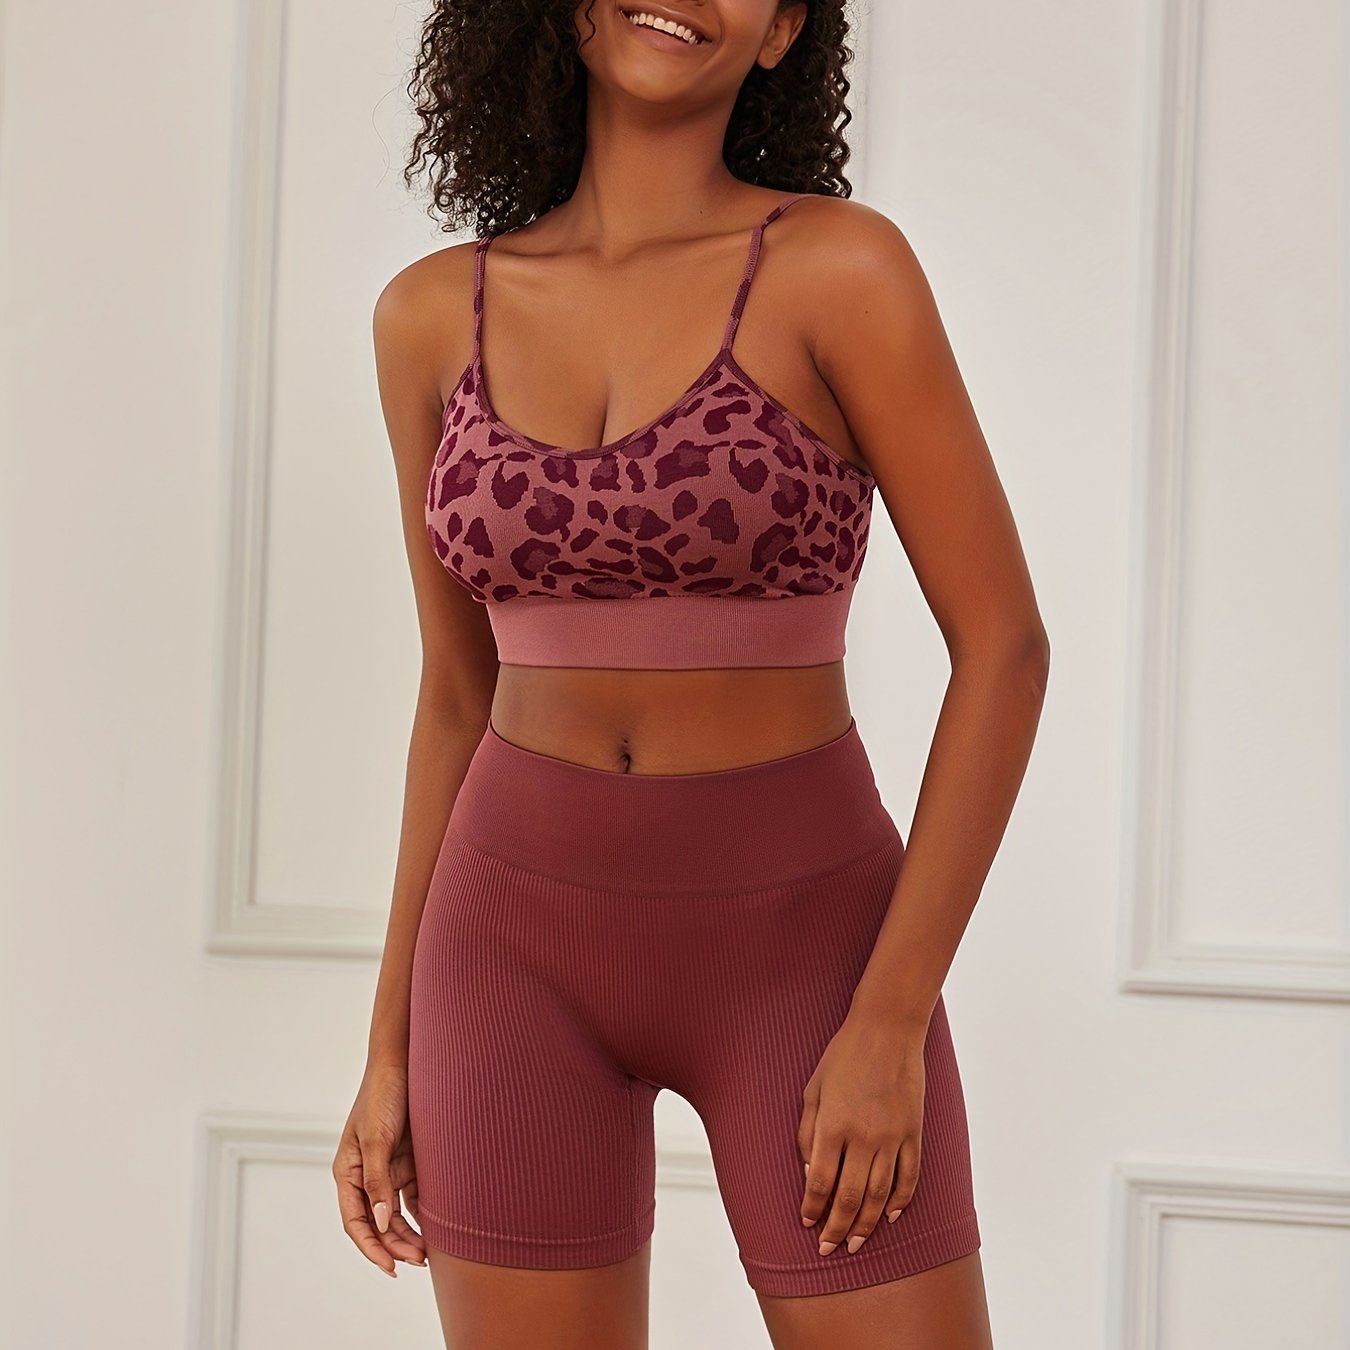 Leopard Print Bra & Panties, Full Coverage Bra & Elastic Panties Lingerie  Set, Women's Lingerie & Underwear